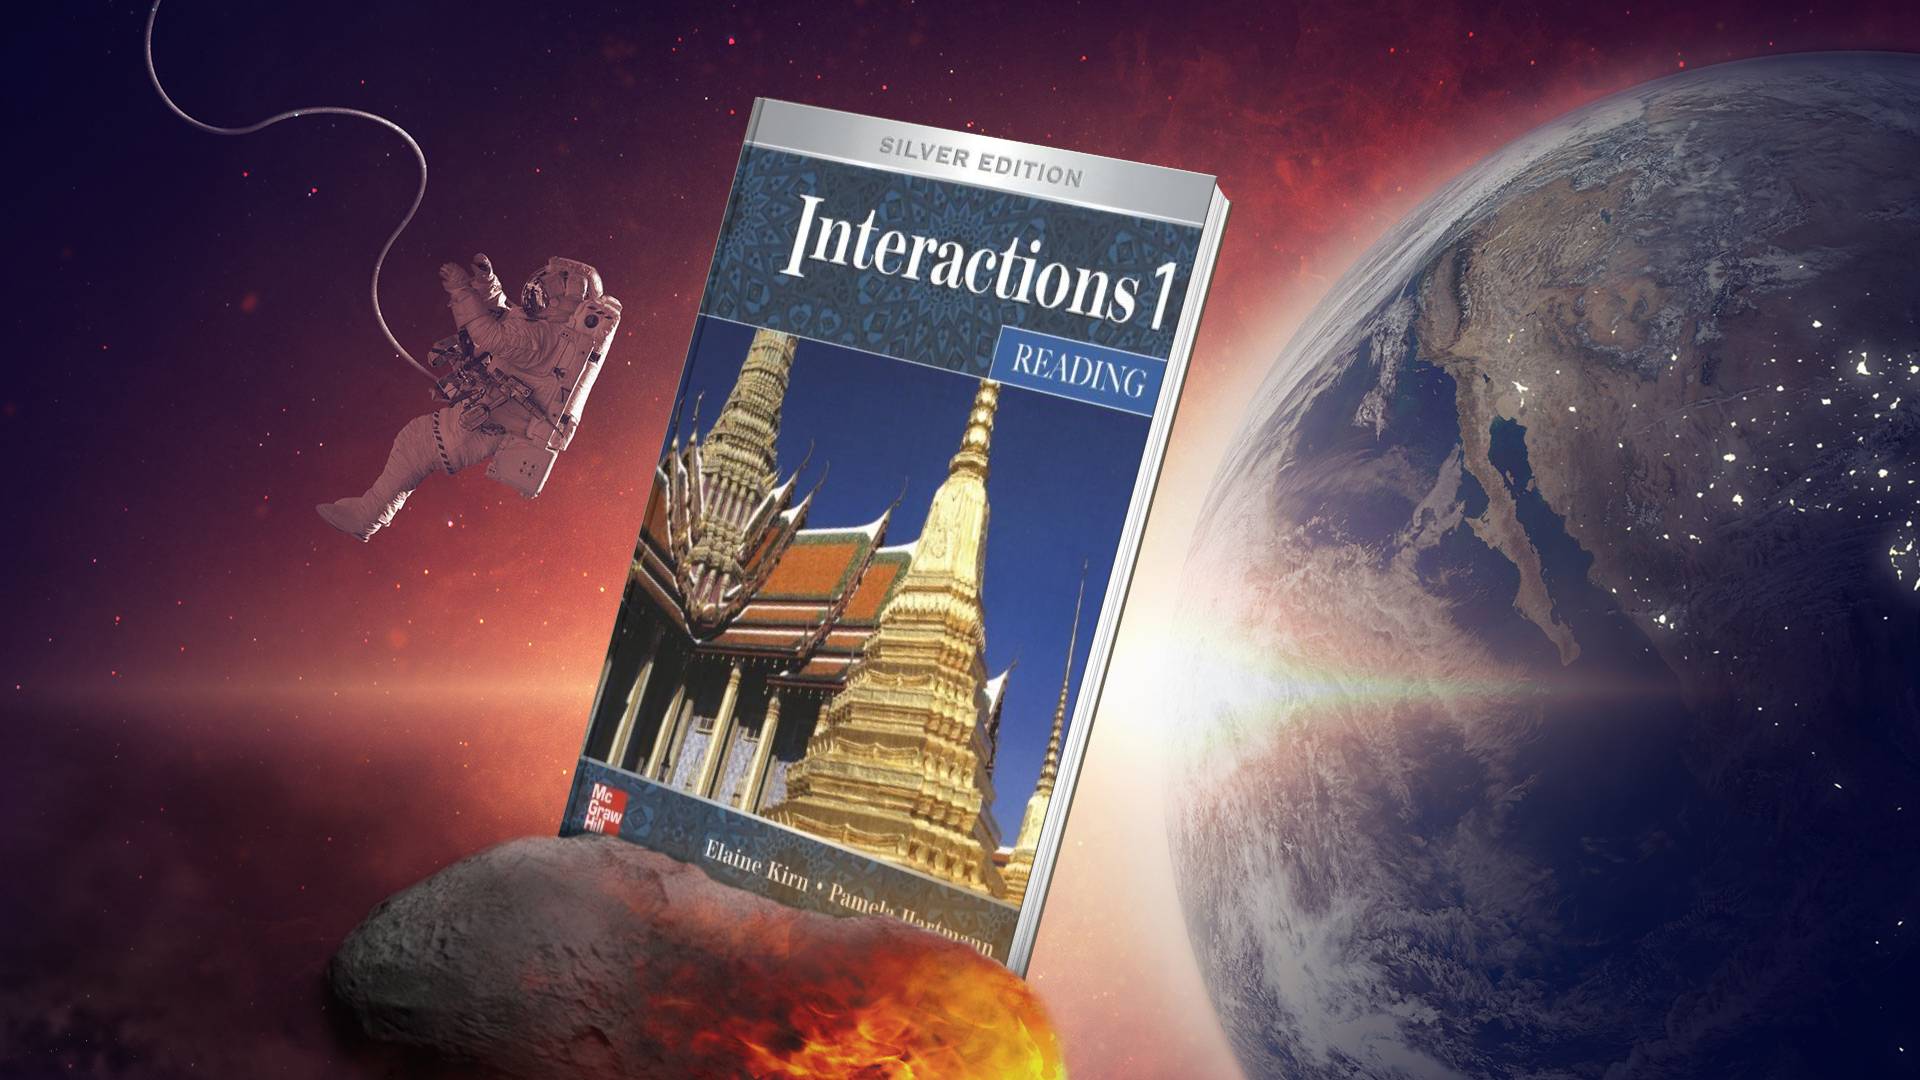 خرید کتاب زبان | کتاب زبان | Interactions Reading 1 Silver Edition | اینتراکشنز یک ریدینگ سیلور ادیشن